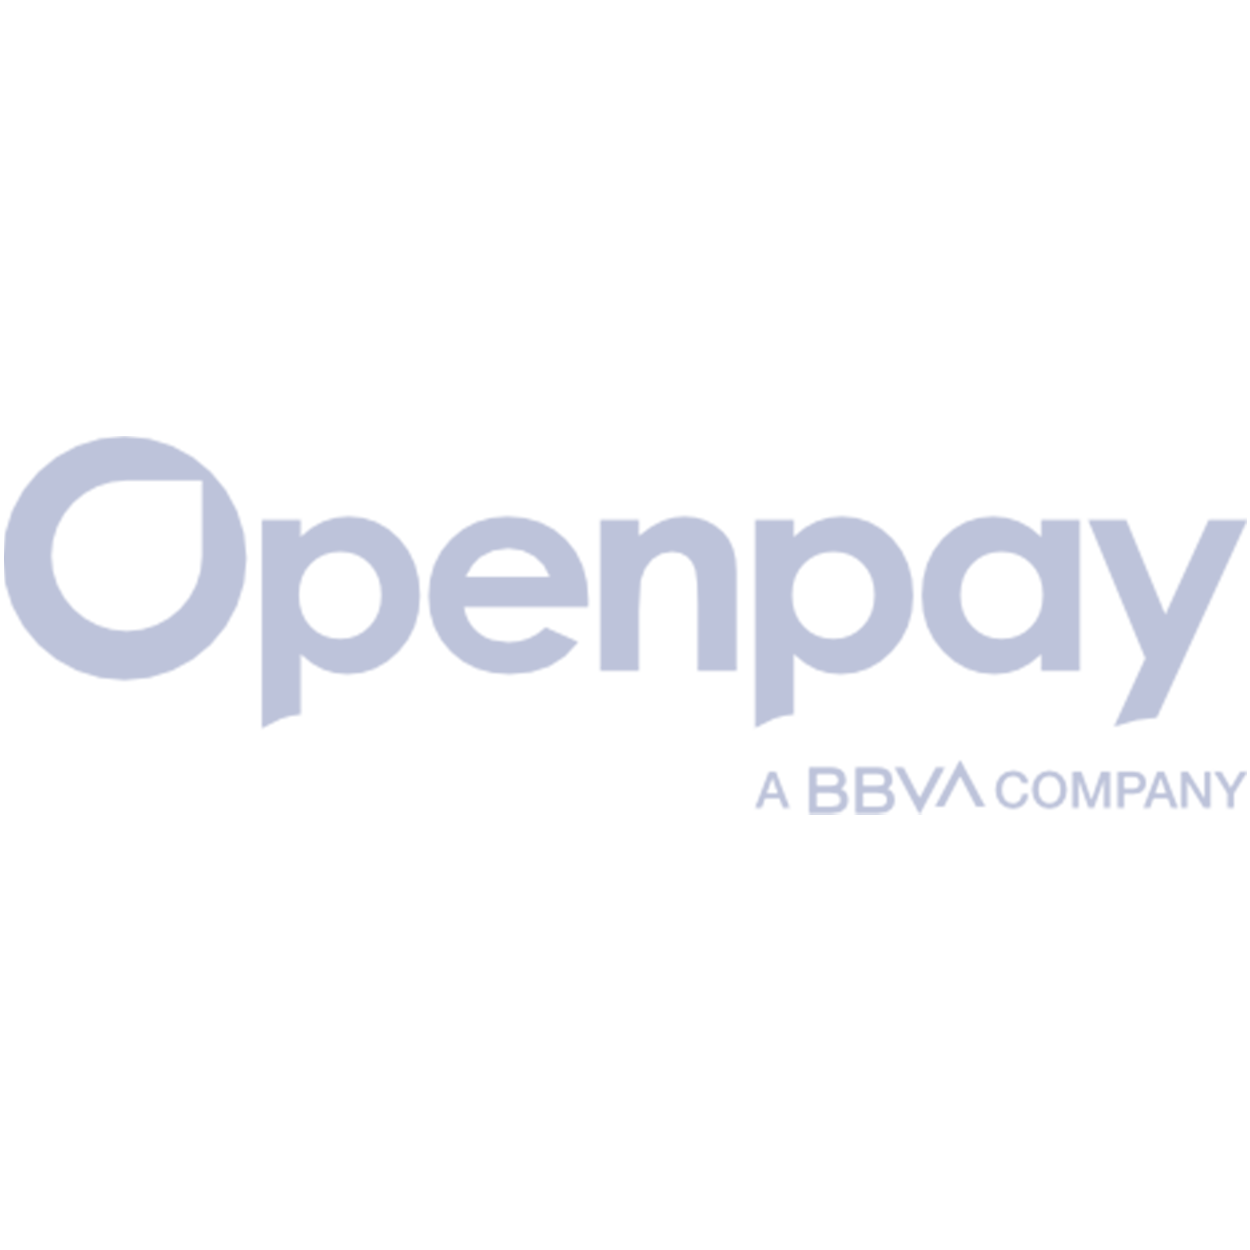 Openpay